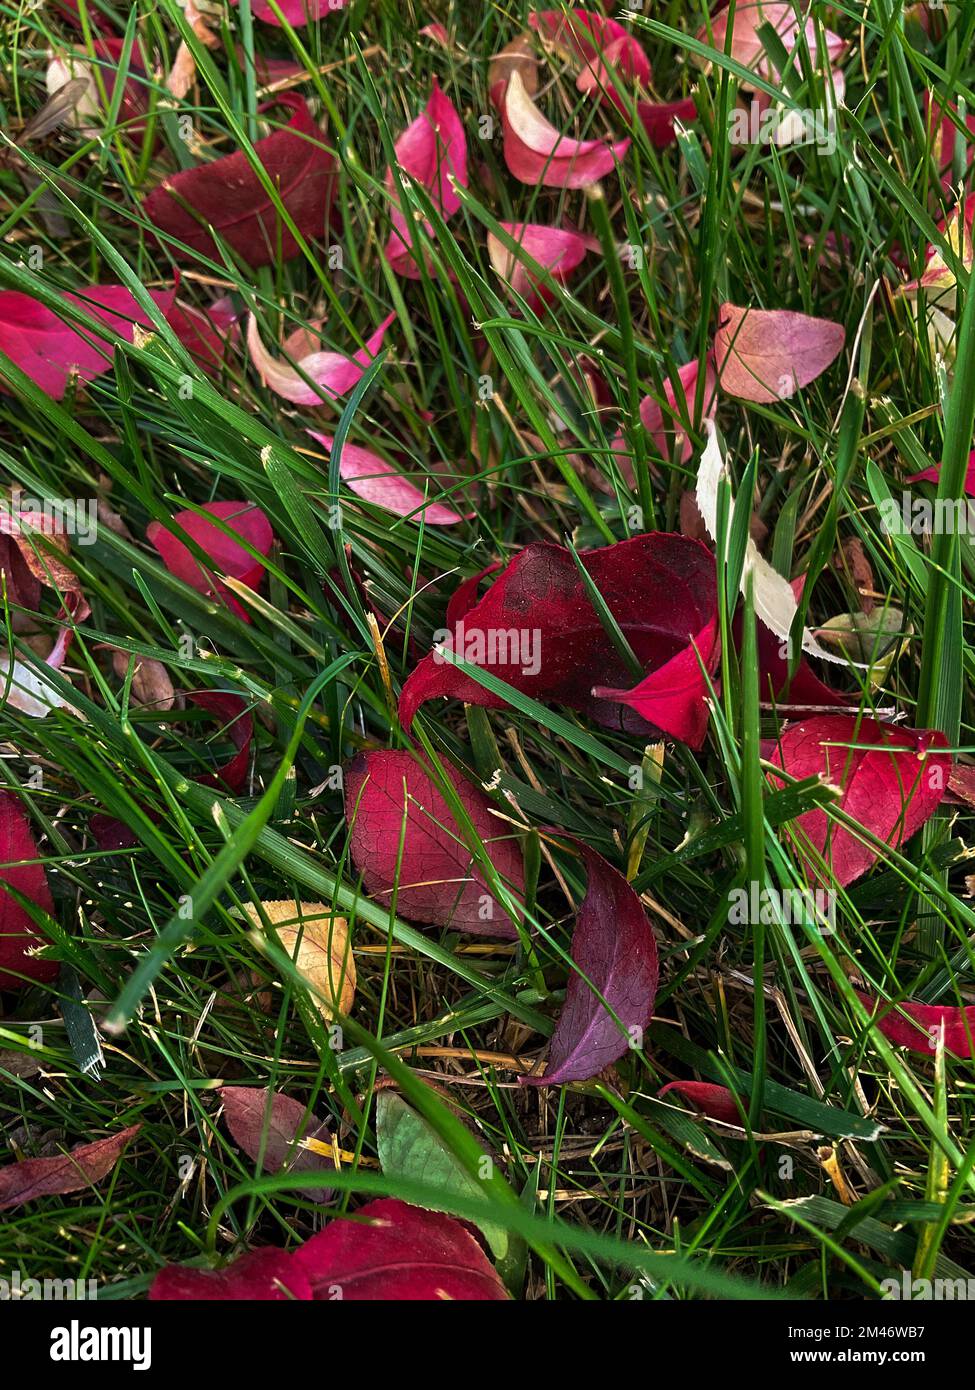 las hojas de forma ovalada se encuentran en la hierba, superficie del suelo del bosque de otoño Foto de stock